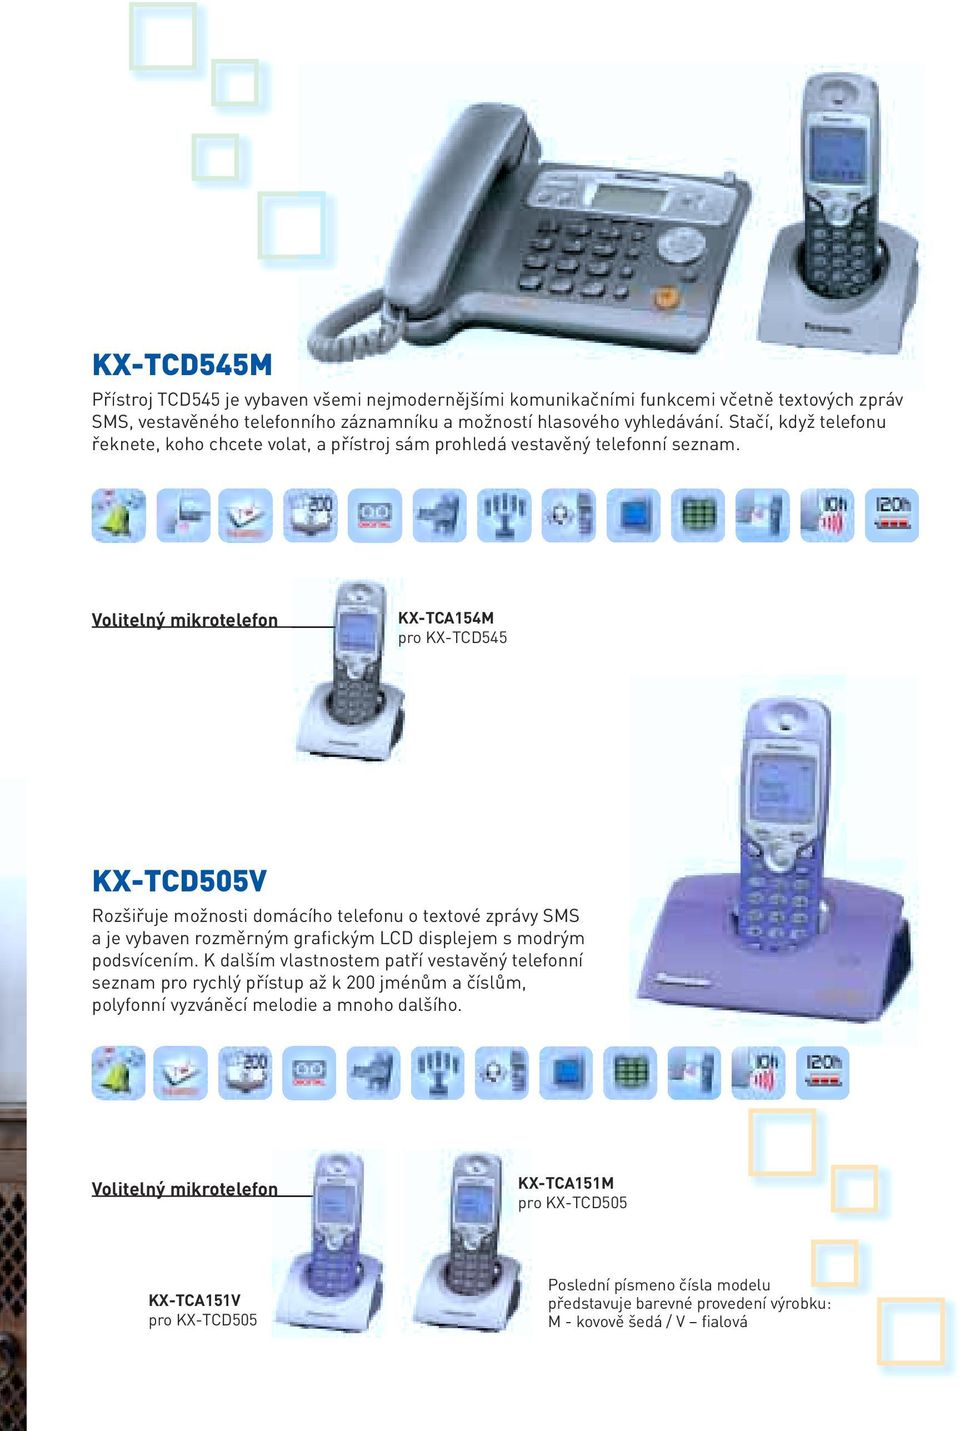 Volitelný mikrotelefon KX-TCA154M pro KX-TCD545 KX-TCD505V Rozšiřuje možnosti domácího telefonu o textové zprávy SMS a je vybaven rozměrným grafickým LCD displejem s modrým podsvícením.